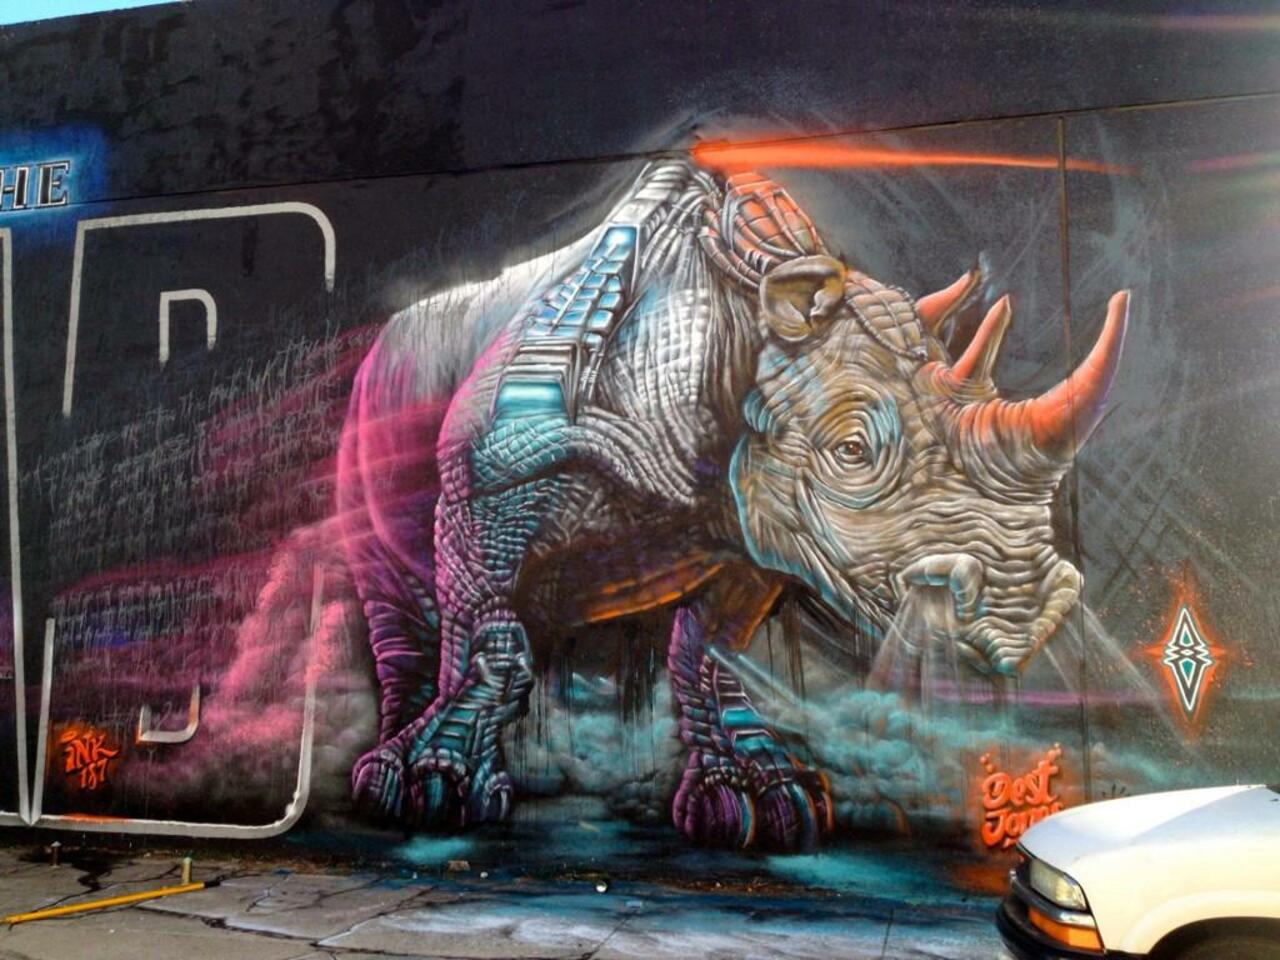 RT @luisainpinas: Incredible Street Art by artist Dest 

#art #mural #graffiti #streetart http://t.co/n8dLBEw43J